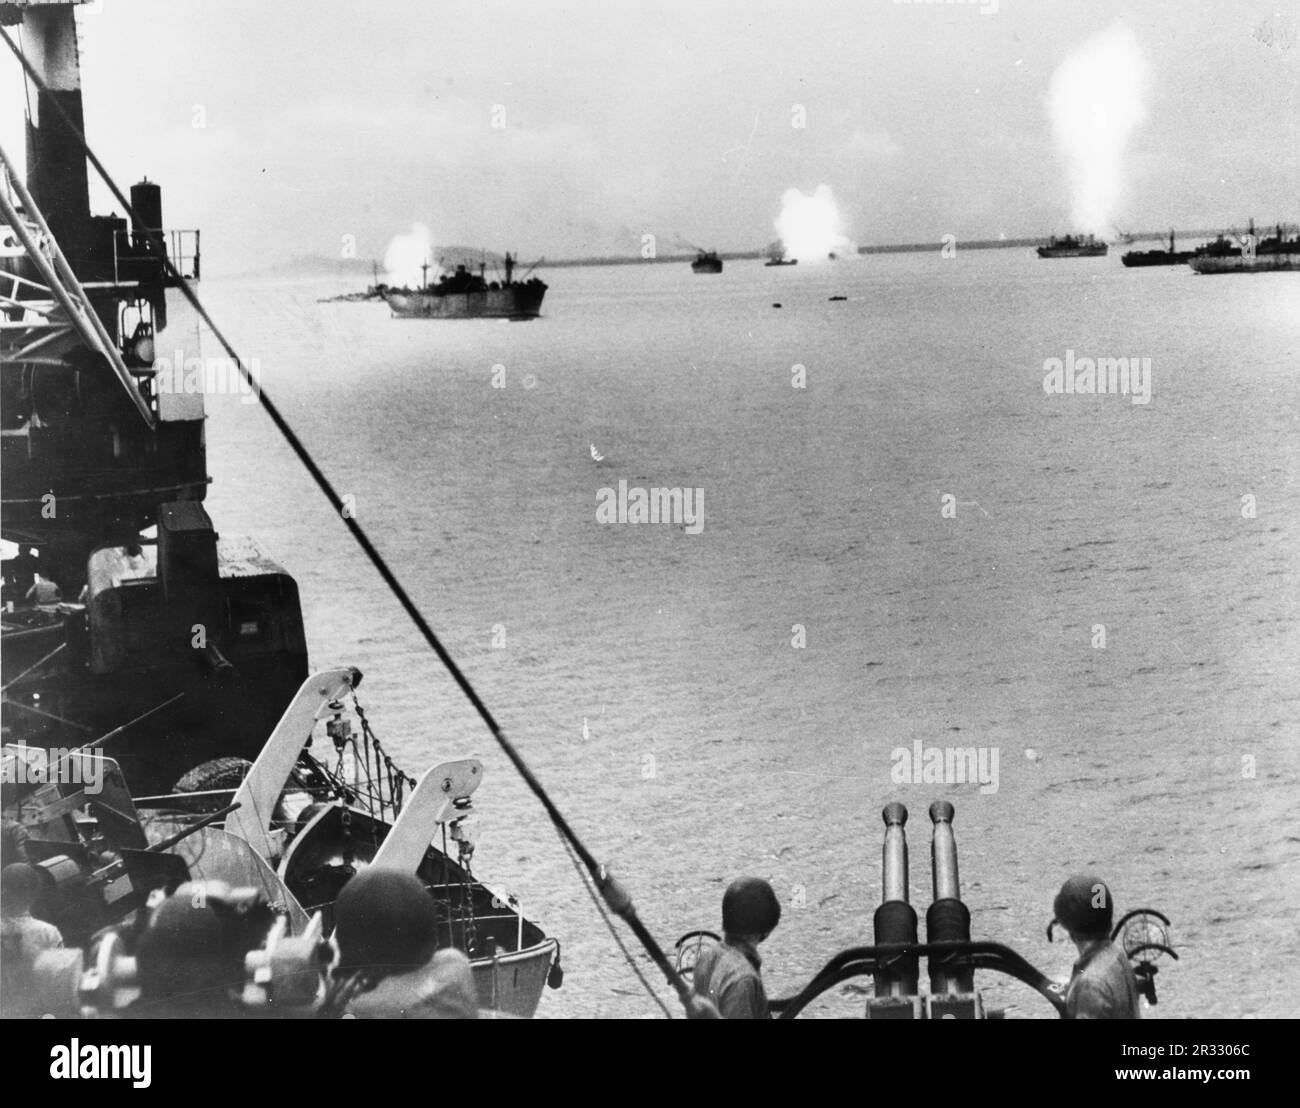 Japanischer Kamikaze-Angriff auf drei US-Schiffe vor Leyte im November 1944.als Japan Ende 1944 vor einer Niederlage stand, entschied es sich, US-Schiffe mit Selbstmordattentaten zu zerstören, Bekannt als Kamikaze. Diese Angriffe waren eine starke physische und psychologische Waffe und versenkten insgesamt 47 Schiffe zu einem Preis von mehr als 3000 Piloten und Flugzeugen. Ende 1944 war die US-Marine so groß, dass die Verluste unbedeutend waren und den Verlauf des Krieges nicht veränderten. Stockfoto